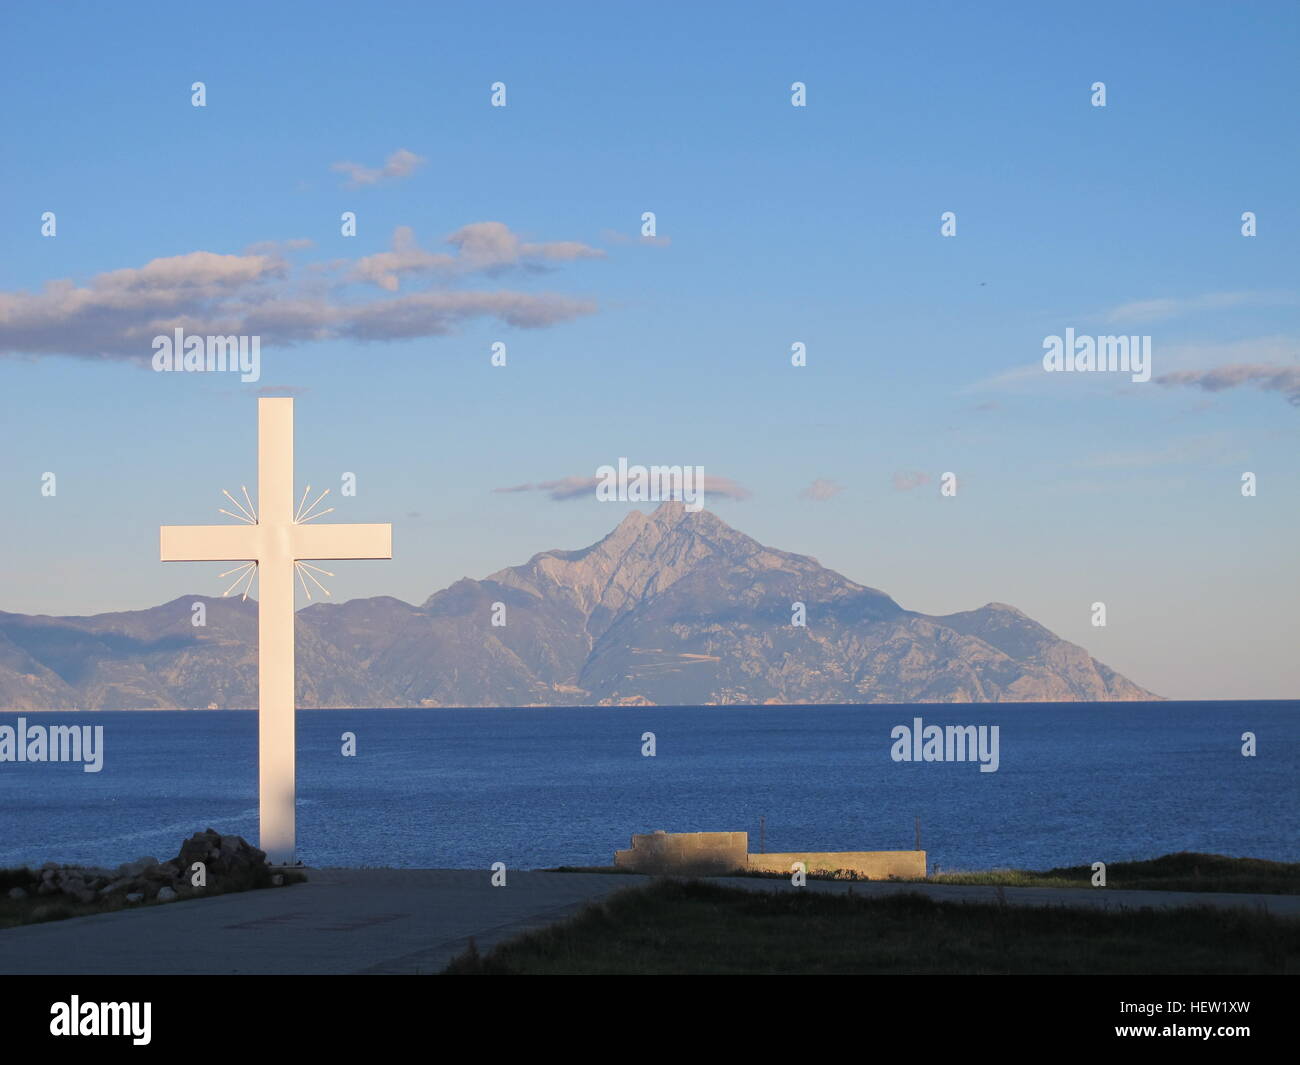 Greece central Macedonia Chalkidiki Khalkidhiki Aegean Sea Mount Athos Holy Mountain moonrise . Stock Photo